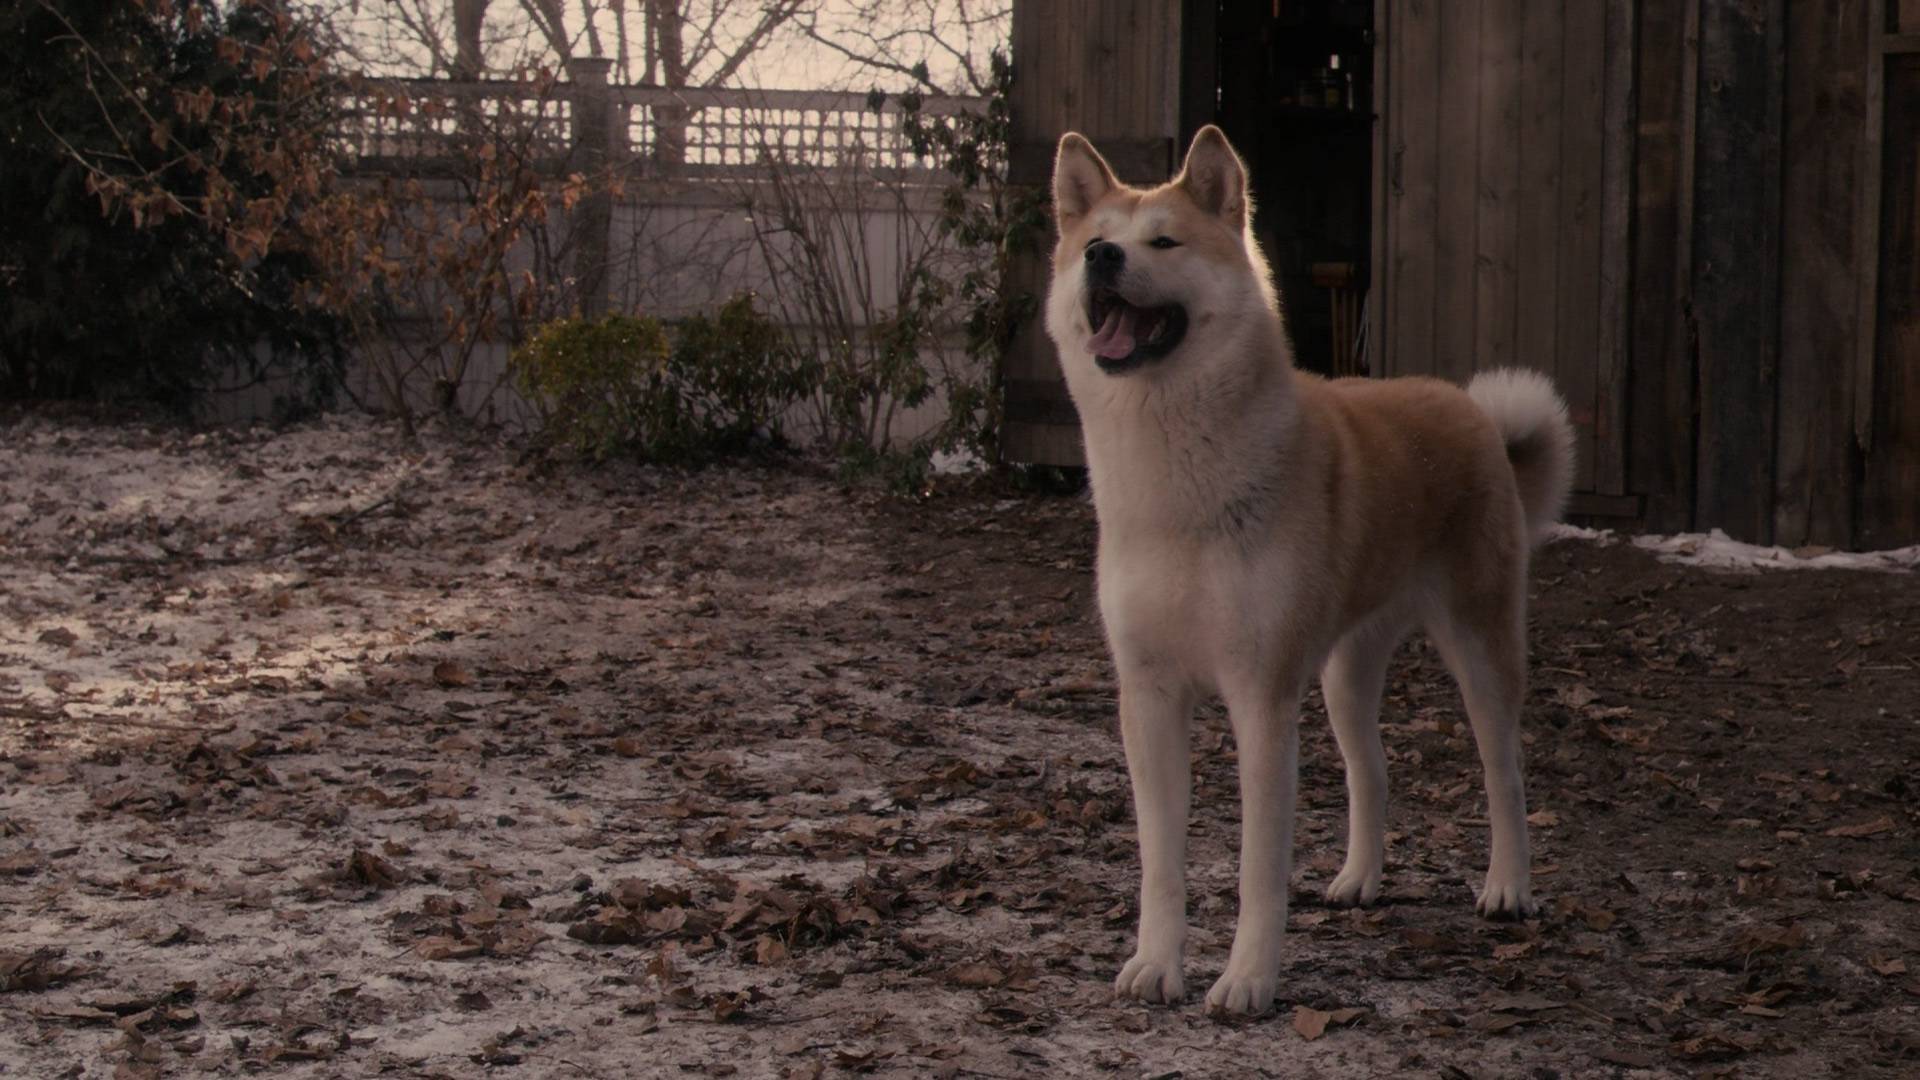 Какой породы была собака в фильме хатико — на какой цнцахики пес?